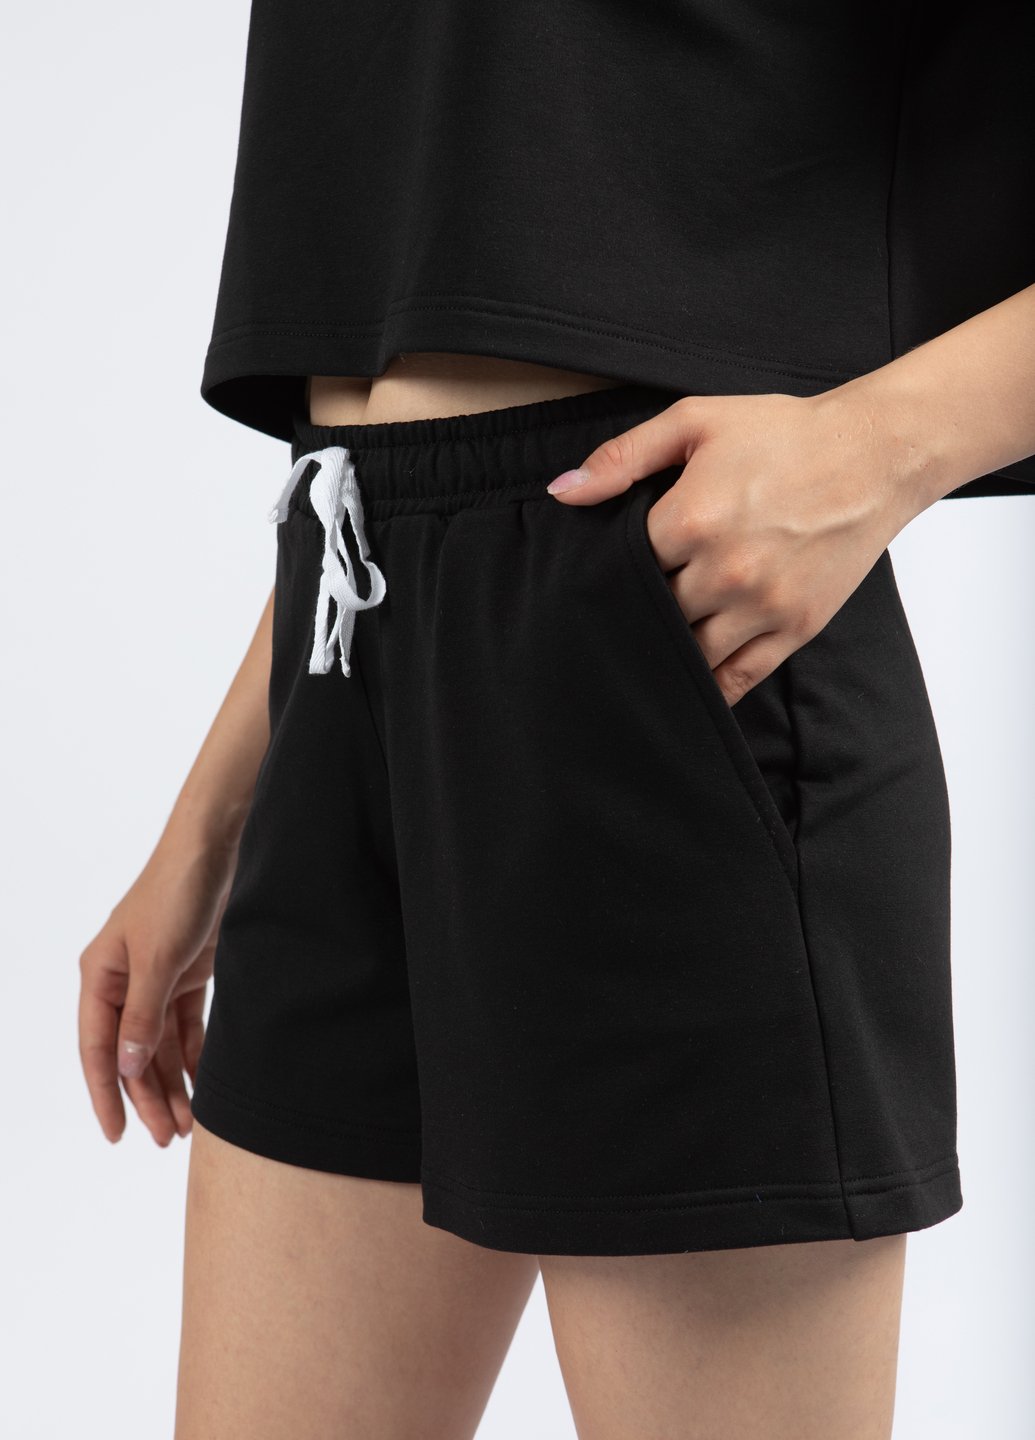 Купить Трикотажные шорты женские Merlini Бастия 300000026 - Черный, 42-44 в интернет-магазине